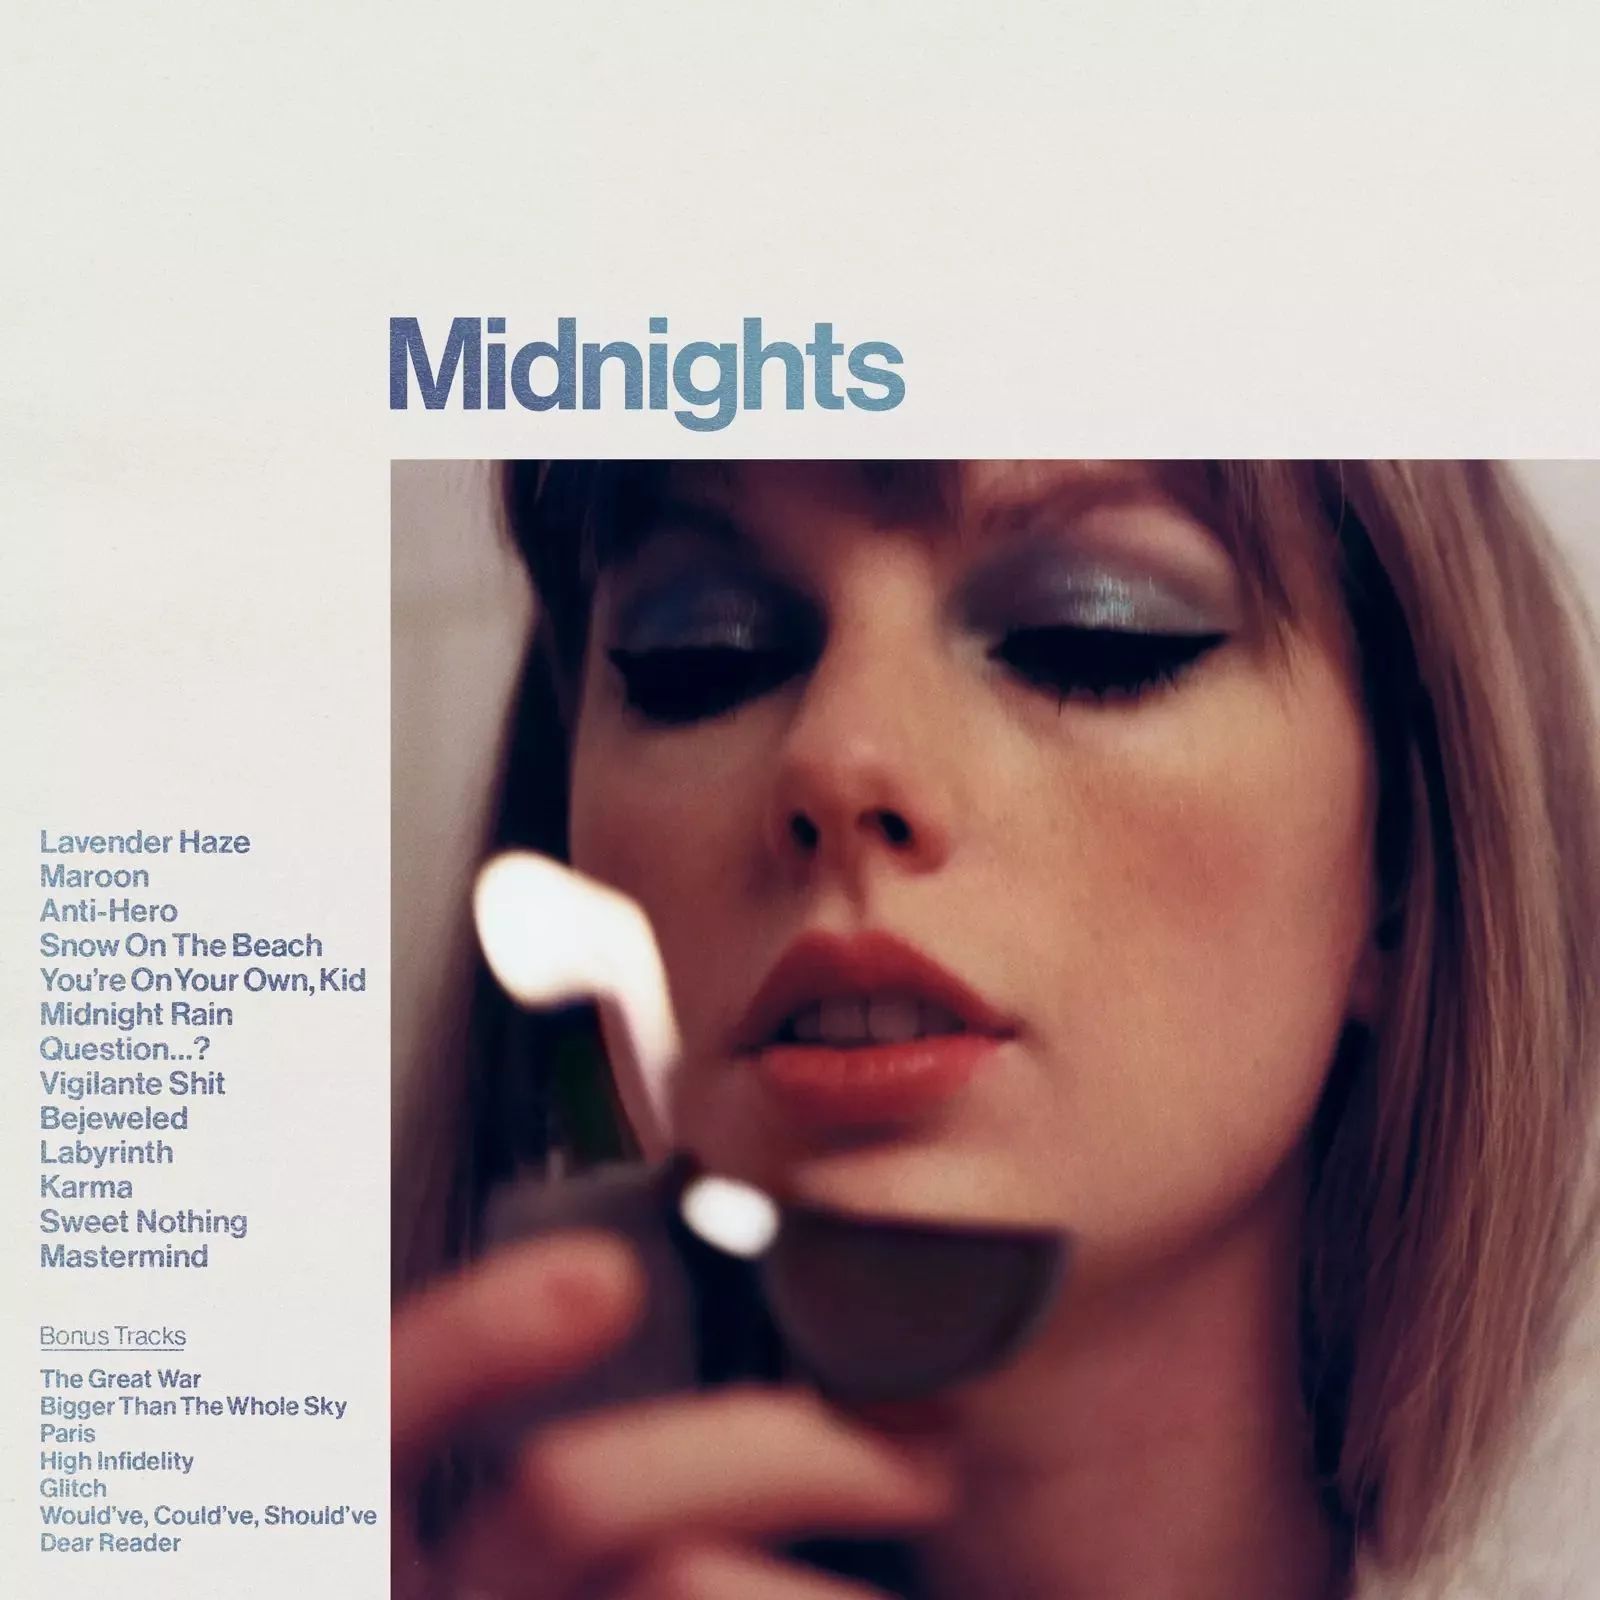 Midnights (3am Edition) | Discografía de Taylor Swift 